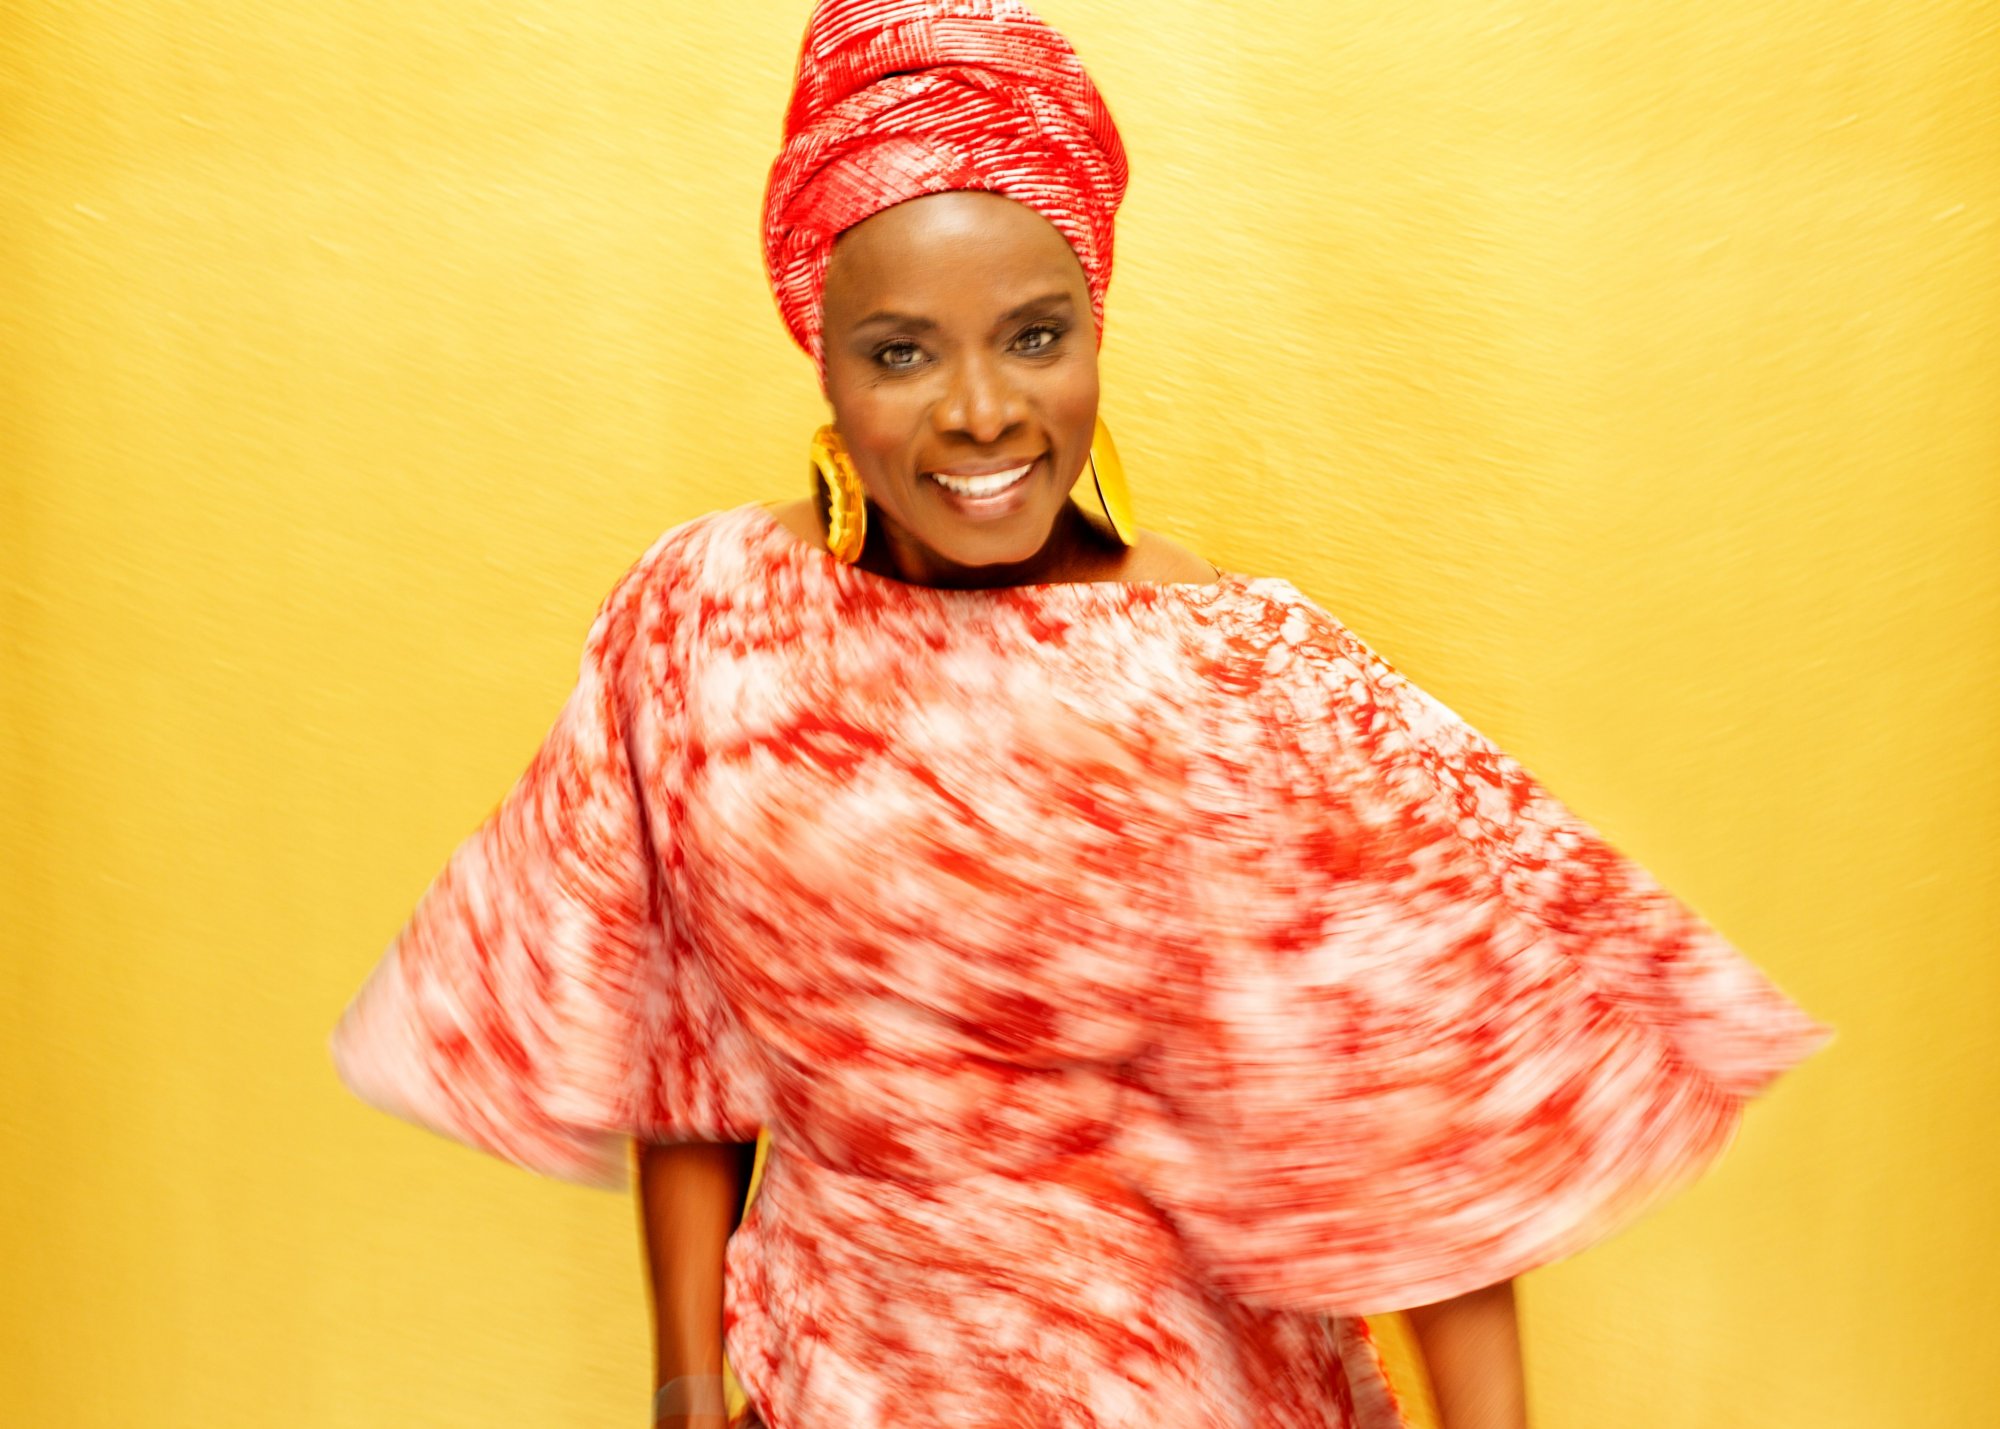 ΚΠΙΣΝ: Έρχεται η Angelique Kidjo – Nτίβα της Αφρικής, βραβευμένη πέντε φορές με Grammy